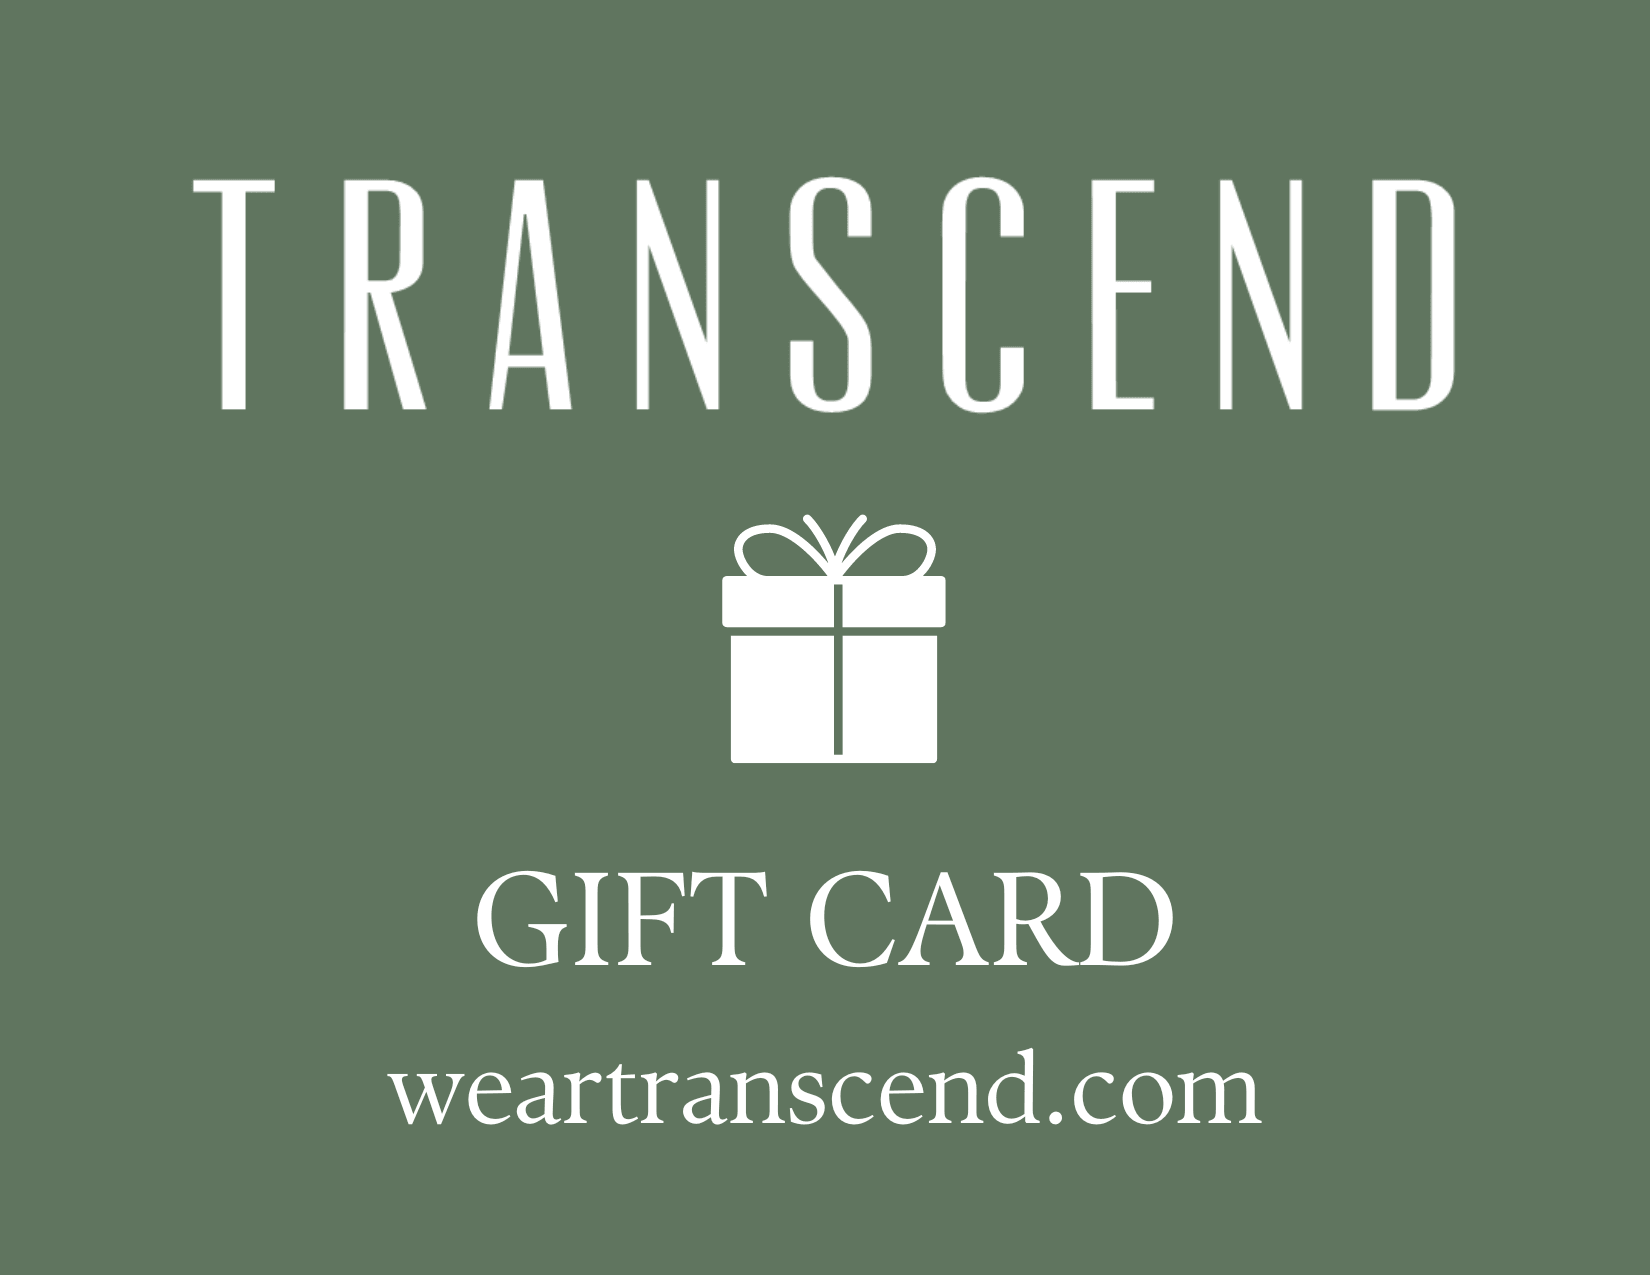 Transcend Gift Card - Transcend